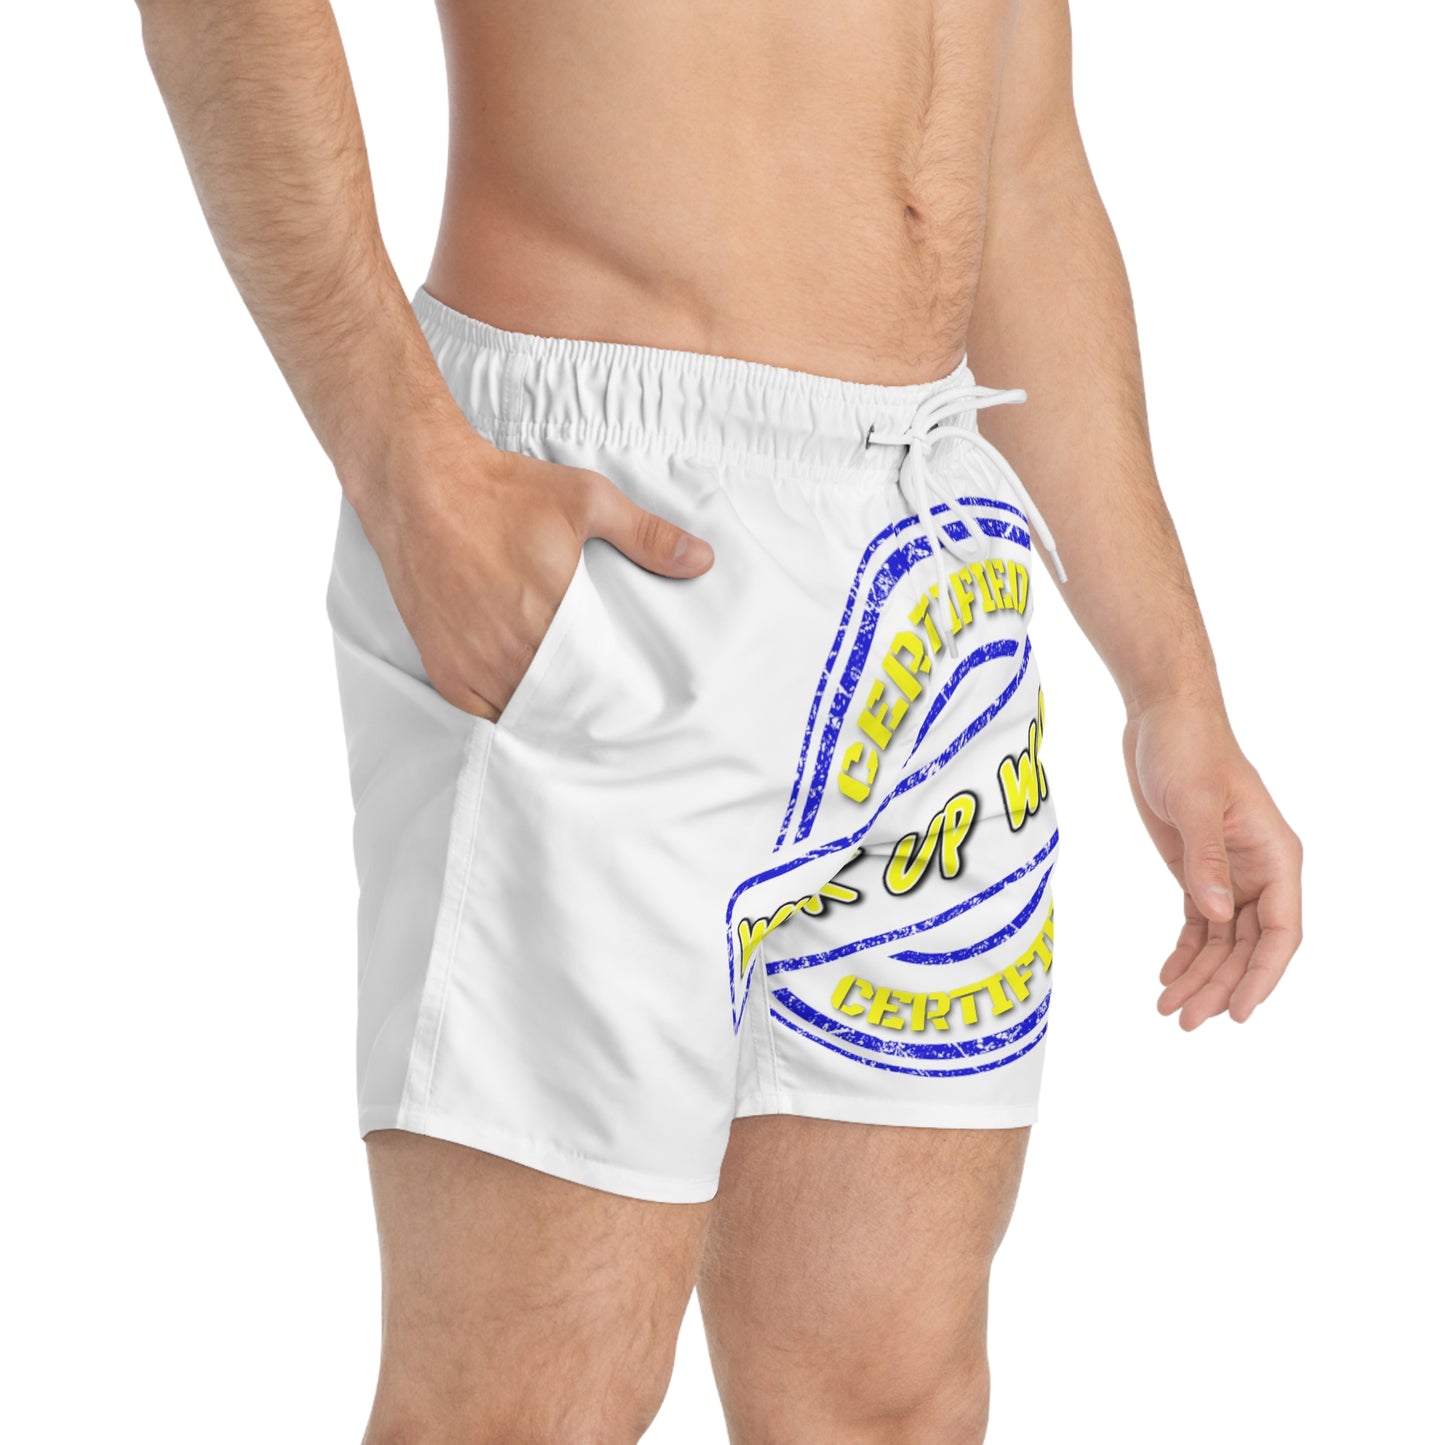 Keevo Certified  - Wuk Up Waist -  Men's Fete Shorts (white)